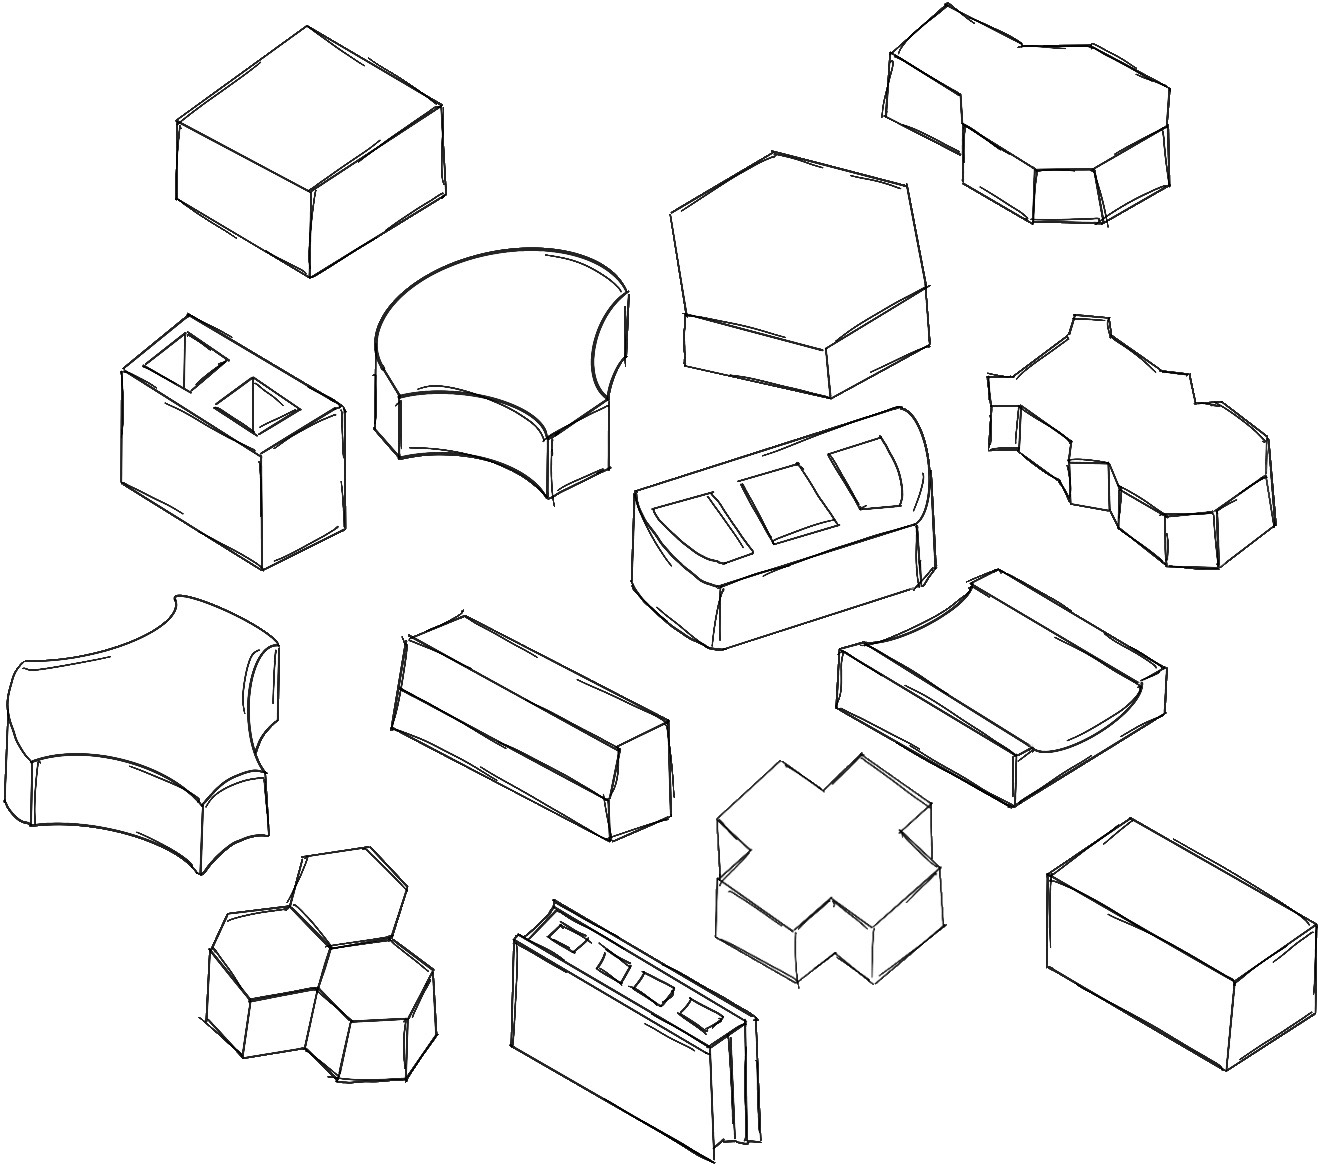 Différentes formes de briques à usage varié posées à même le sol: carrés, croix, tomettes hexagonales, goutières...